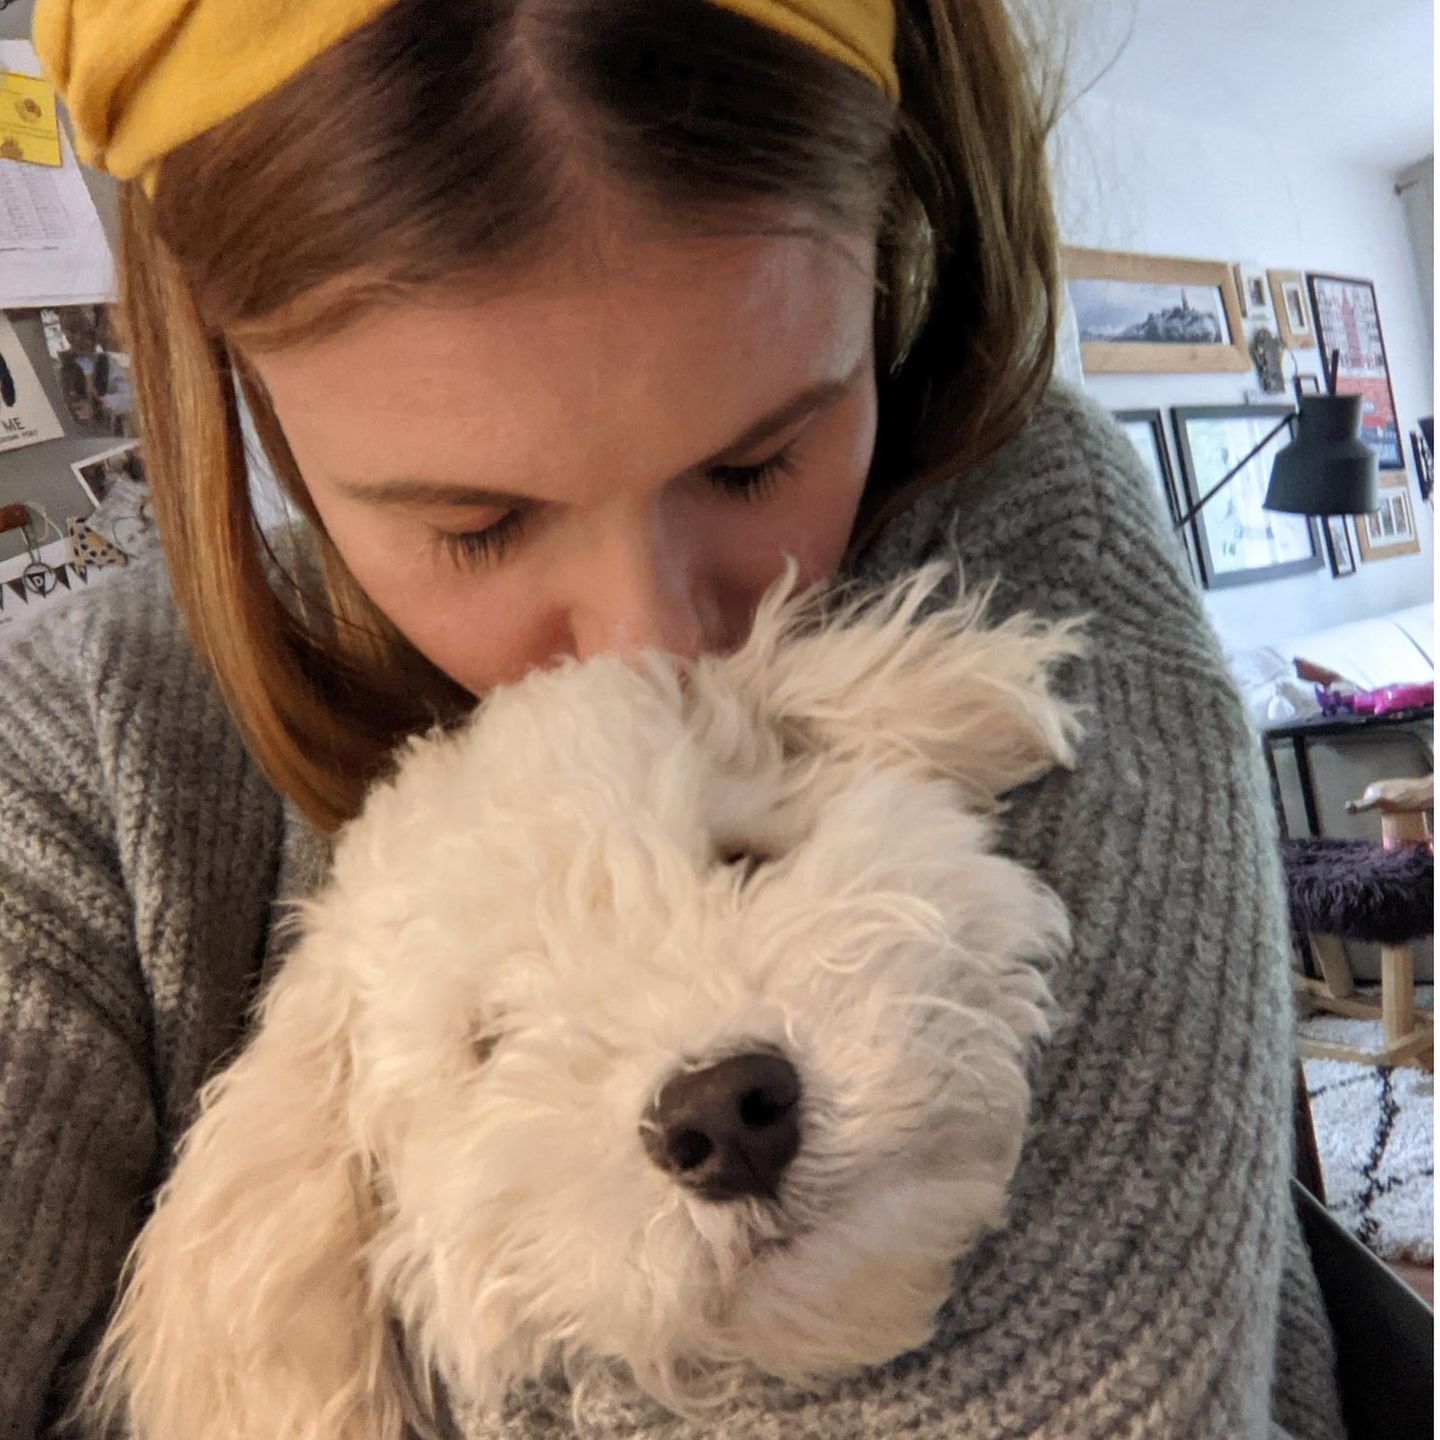 Liebe-dein-Haustier-Tag: Frau mit weißem Wuschel-Hund